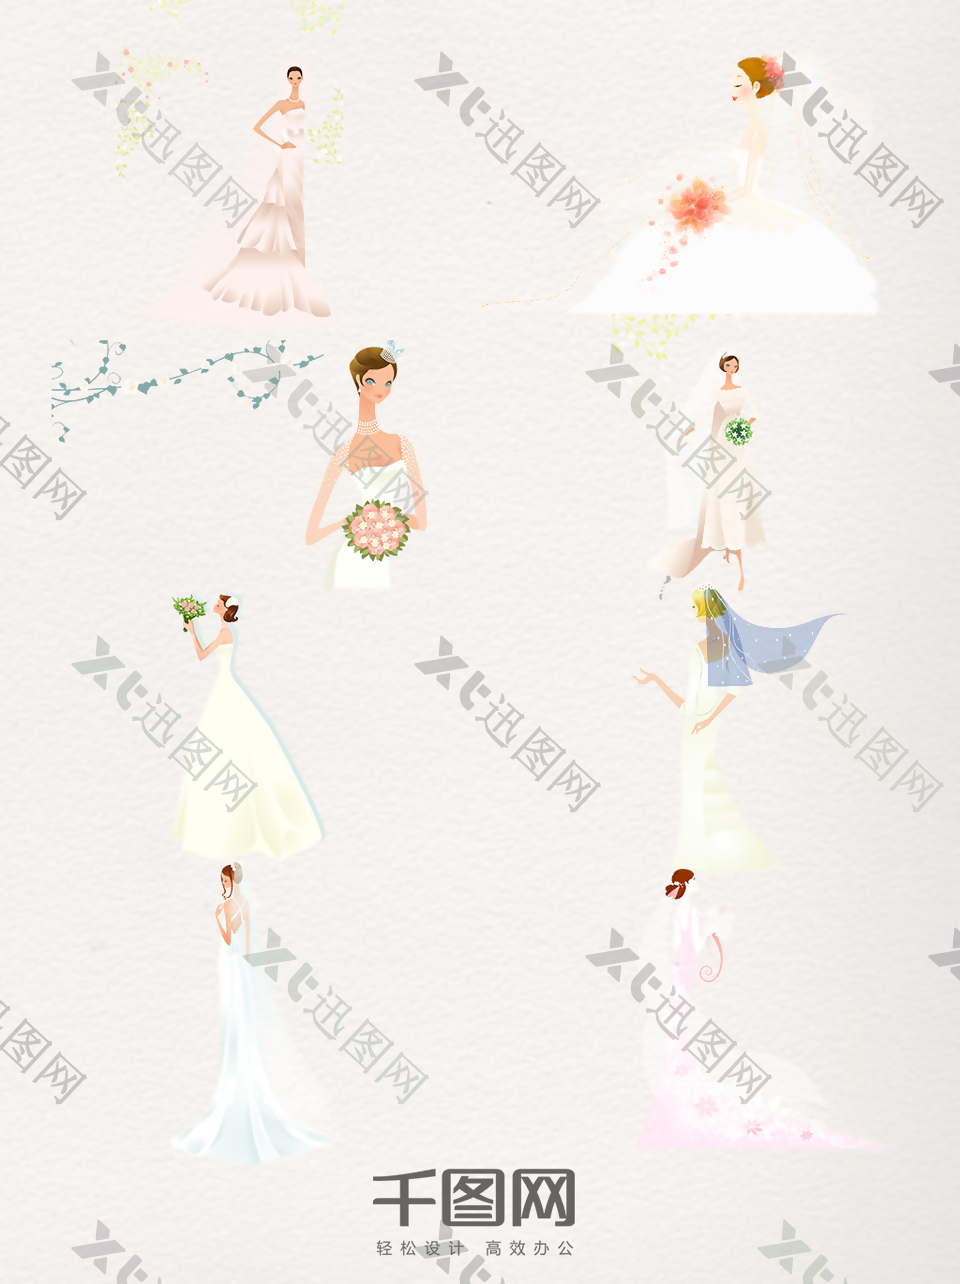 一组美丽新娘婚礼结婚插画图